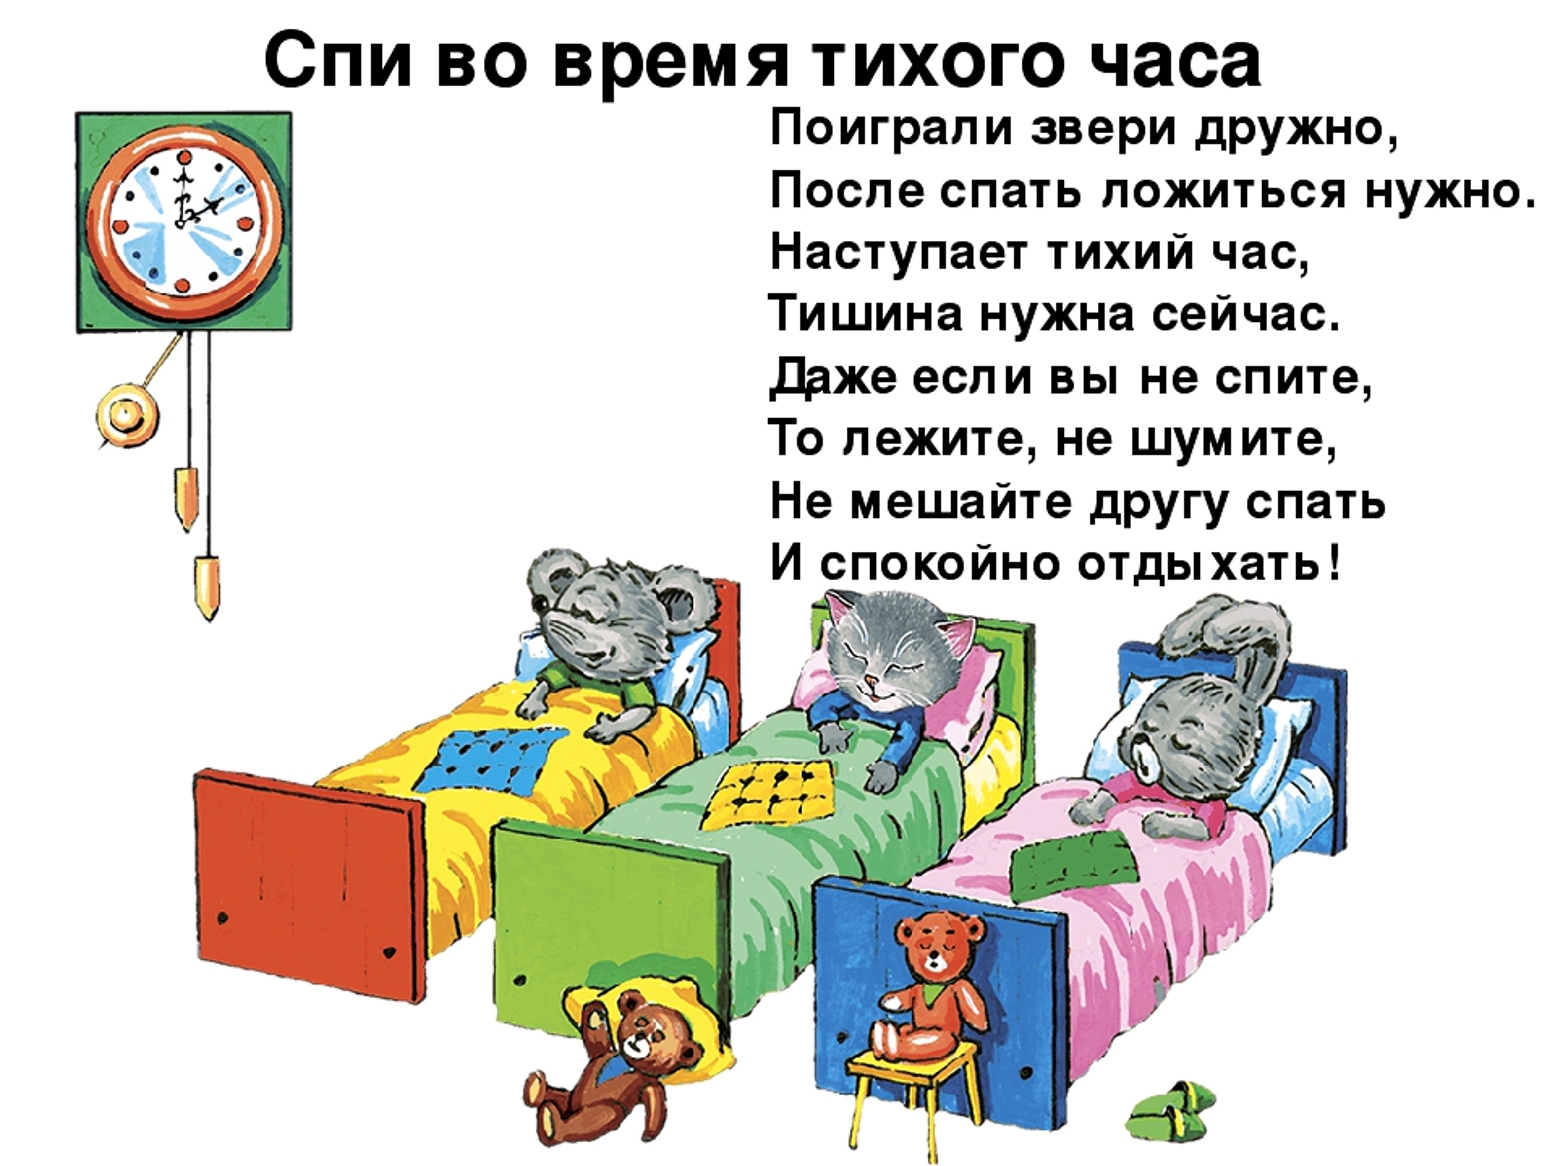 Спать другими словами. Стих про тихий час. Правила поведения в спальне в детском саду. Тихий час стихи для детей. Дети в детском саду тихий час.